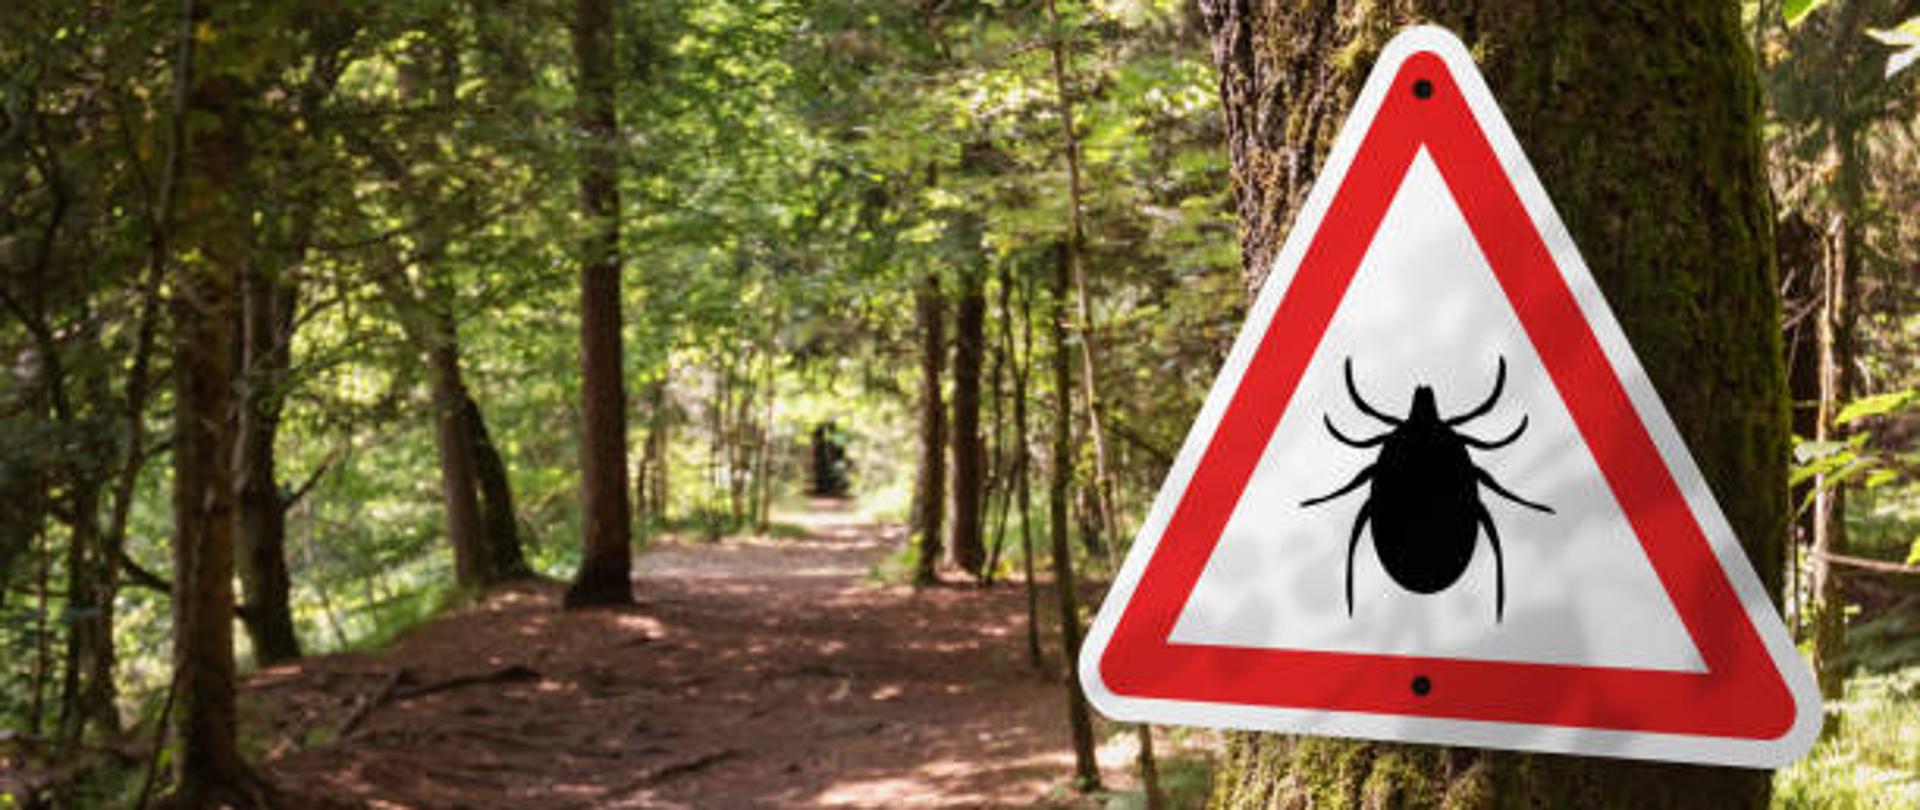 Zdjęcie przedstawia drogę przez las, przy której na drzewie zamocowany jest trójkątny znak ostrzegawczy o kleszczach. 